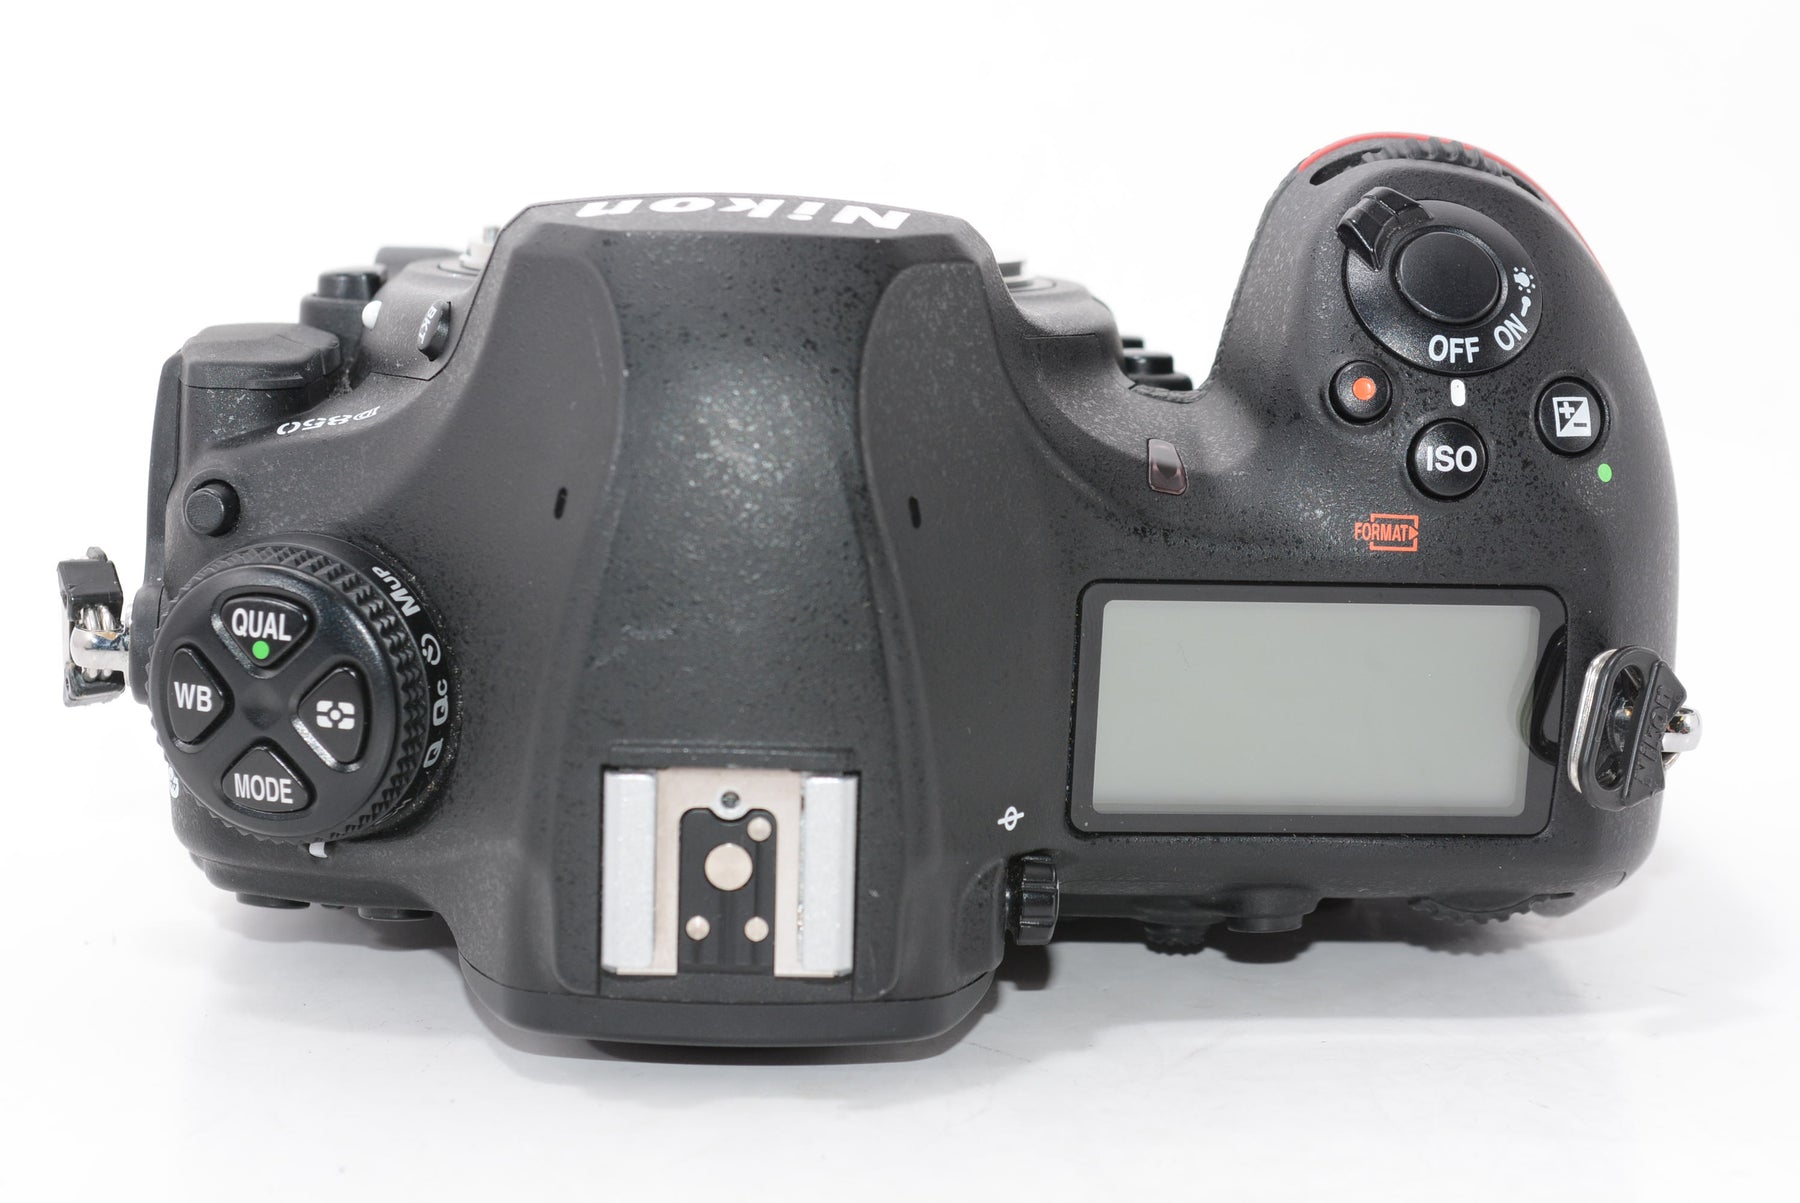 【外観並級】Nikon デジタル一眼レフカメラ D850 ブラック